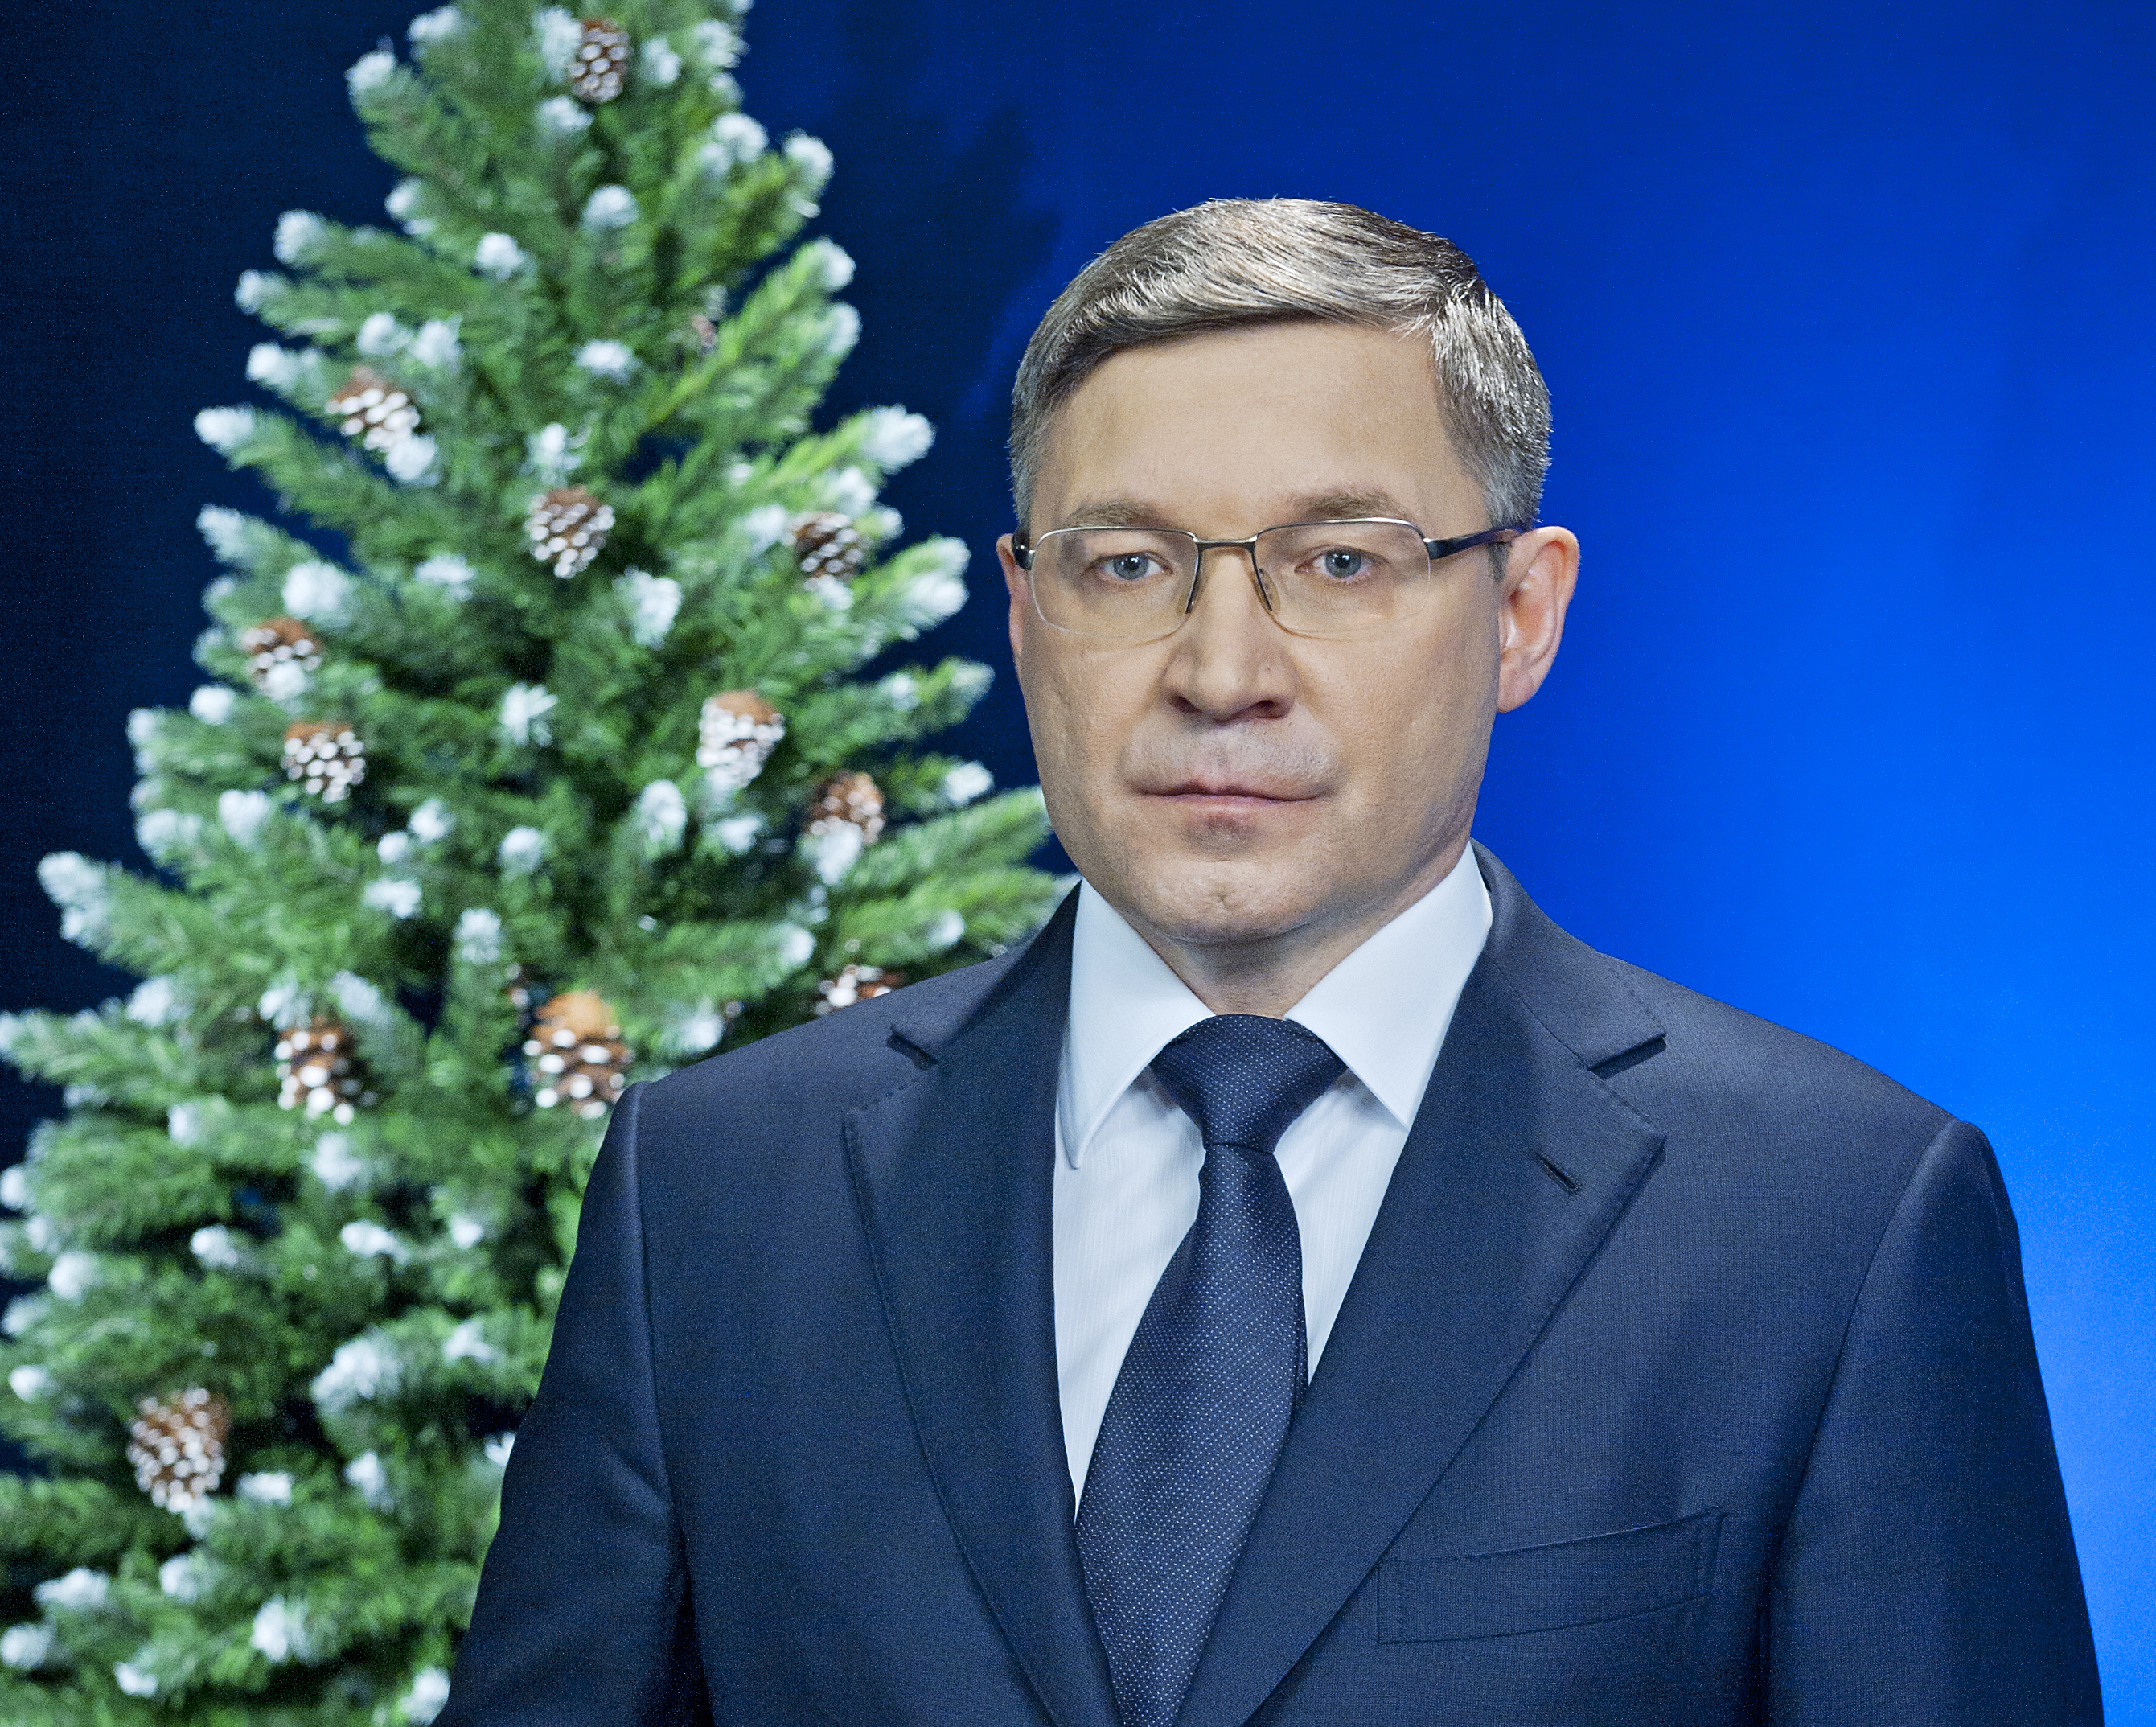 губернатор Тюменской области Владимир Якушев, фото с елкой